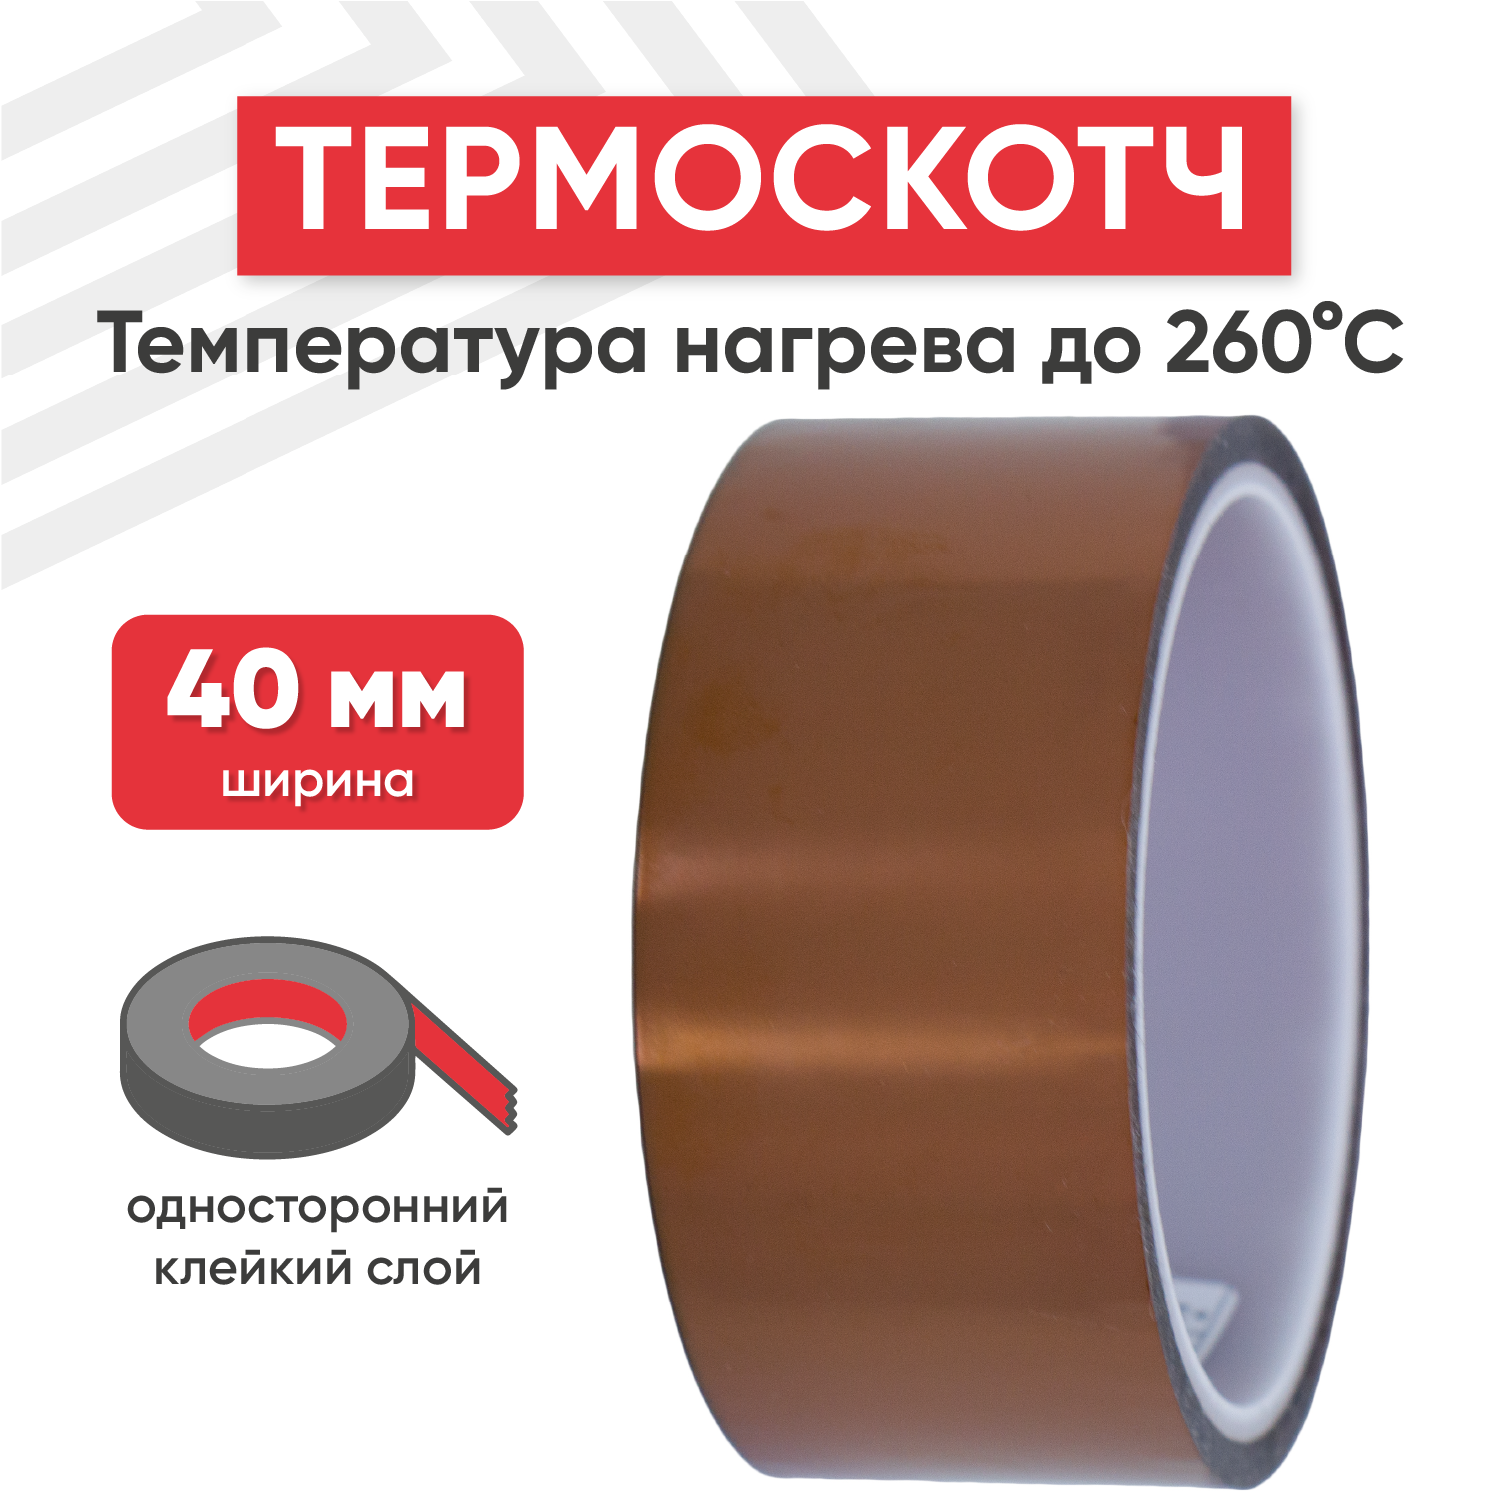 Термостойкая клейкая лента (термоскотч) шириной 40 мм, 33 метра, нагрев до 260 градусов Цельсия